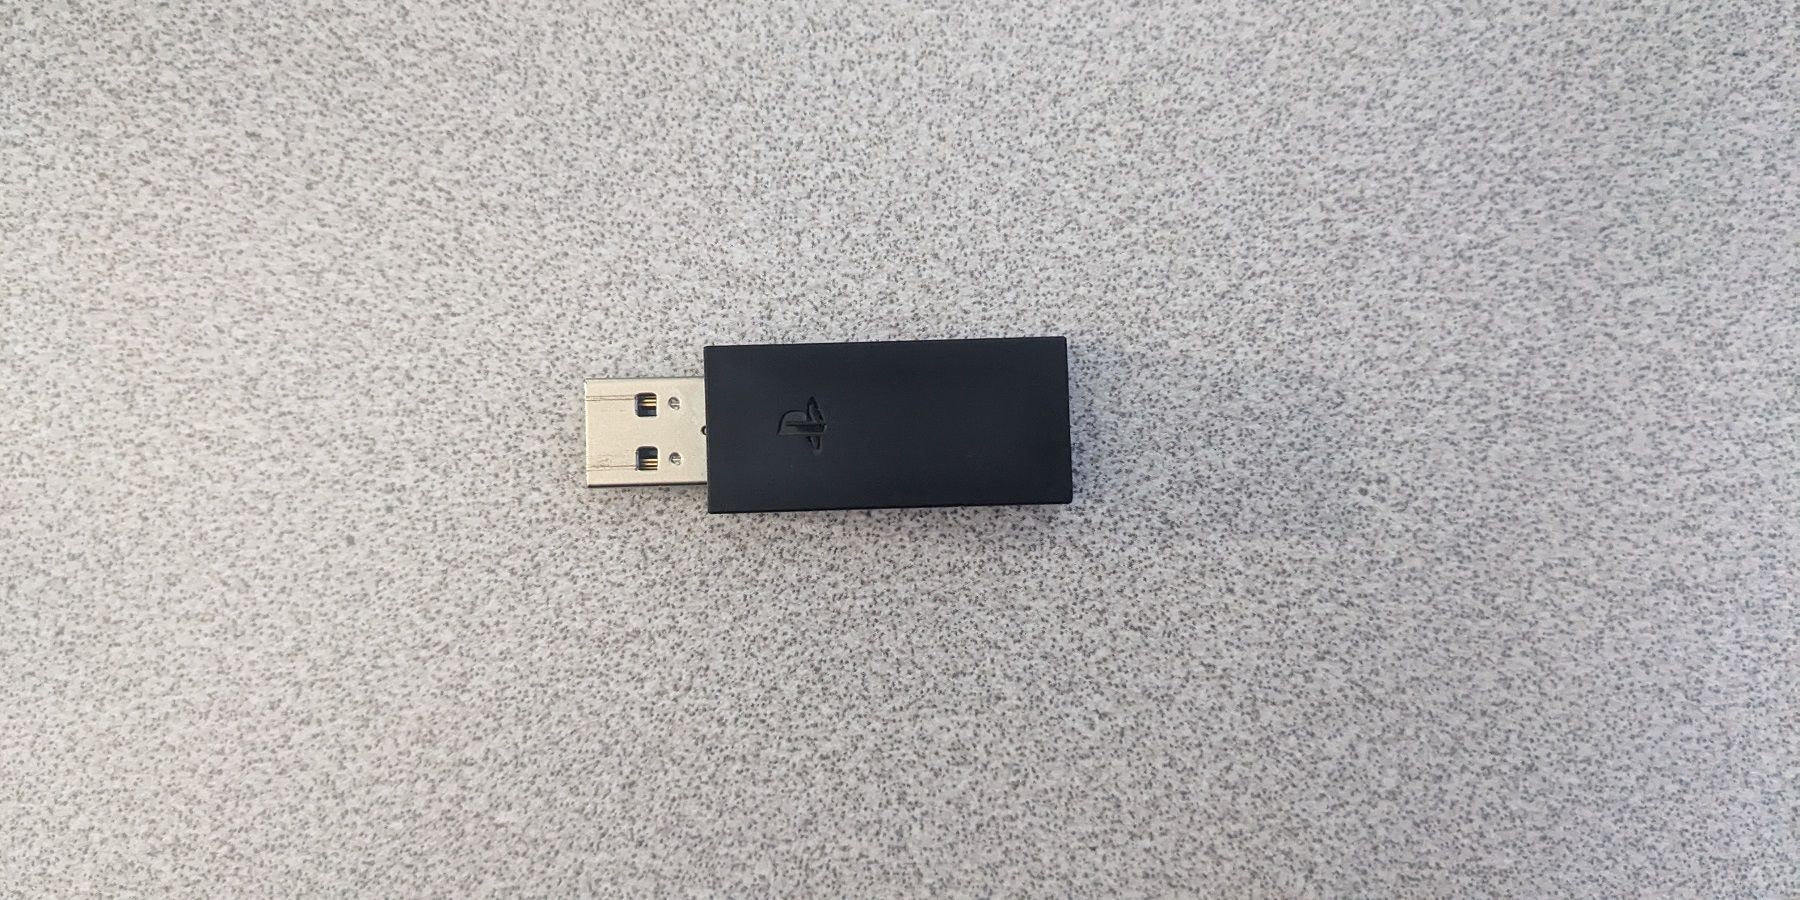 Pulse 3D USB Receiver